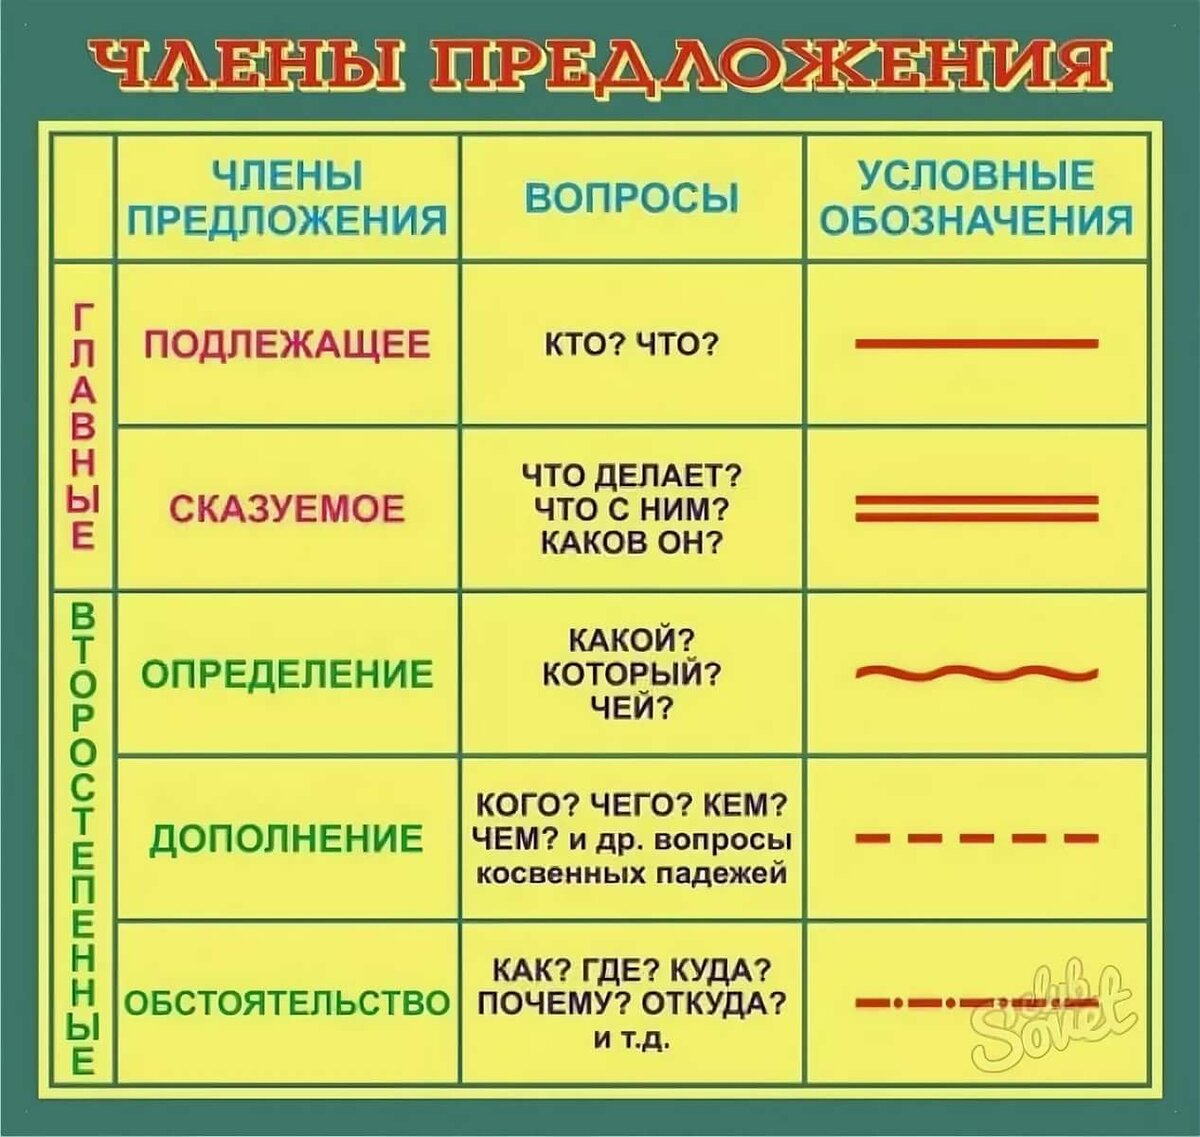 белорусский язык все члены сказа фото 89